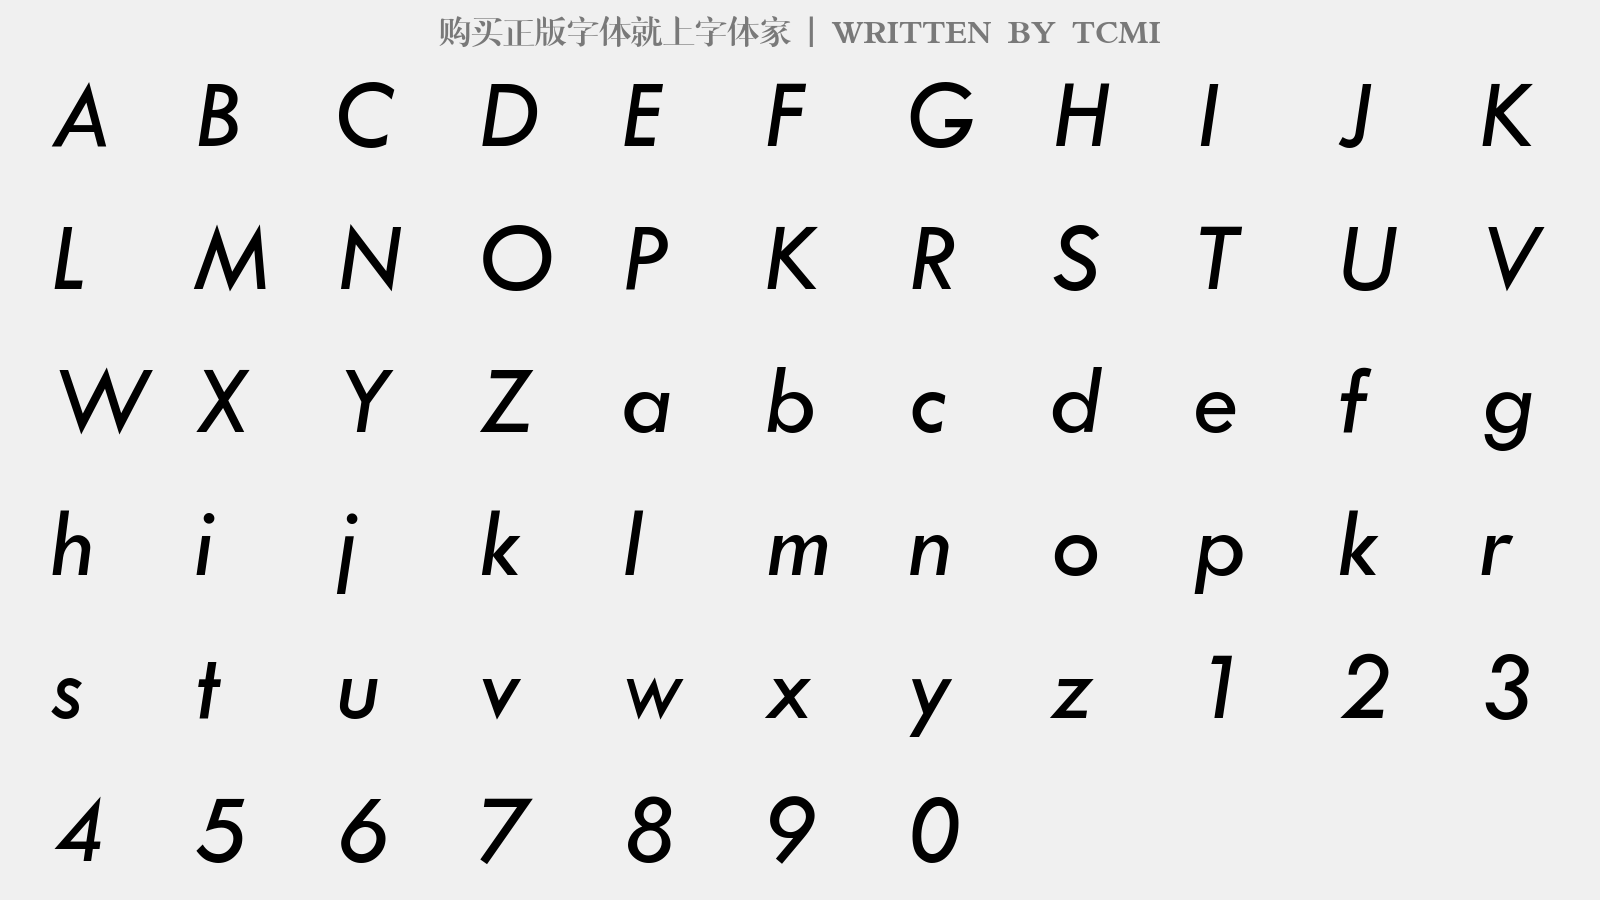 TCMI - 大写字母/小写字母/数字